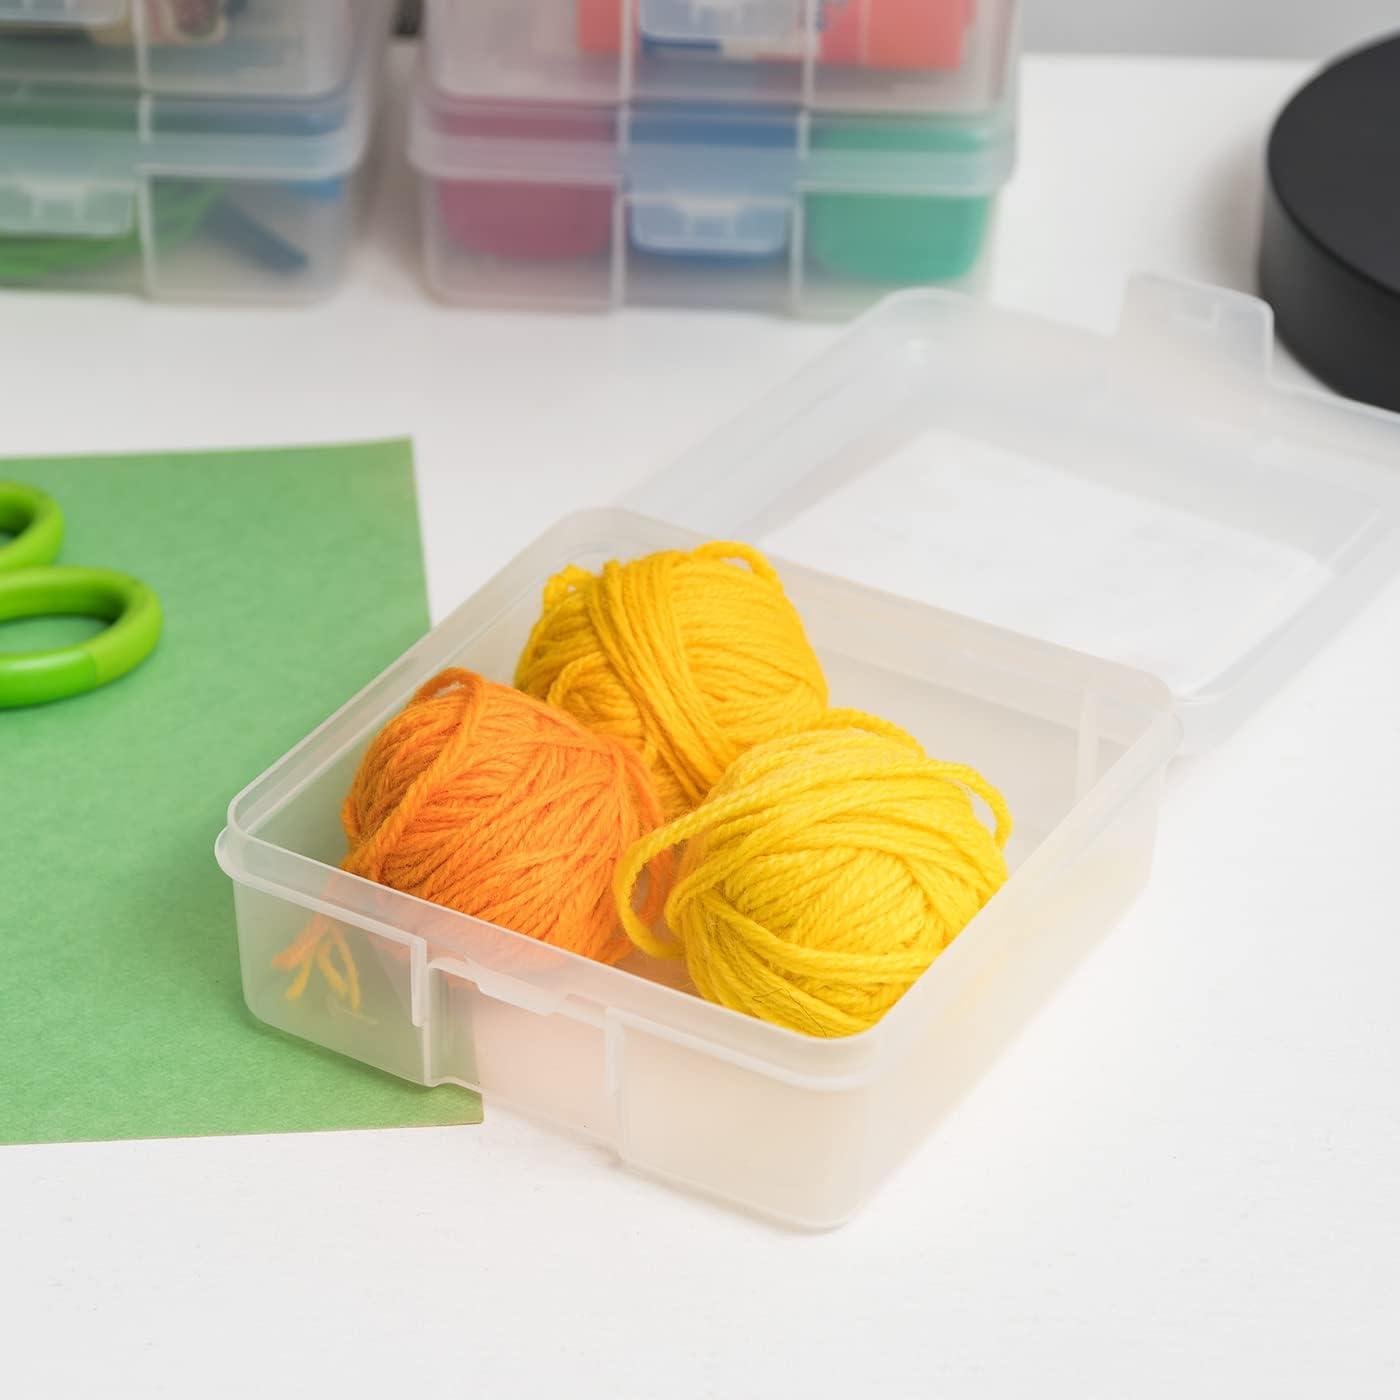 Iris Usa 10 Pack Medium Plastic Hobby Art Craft Supply Organizer